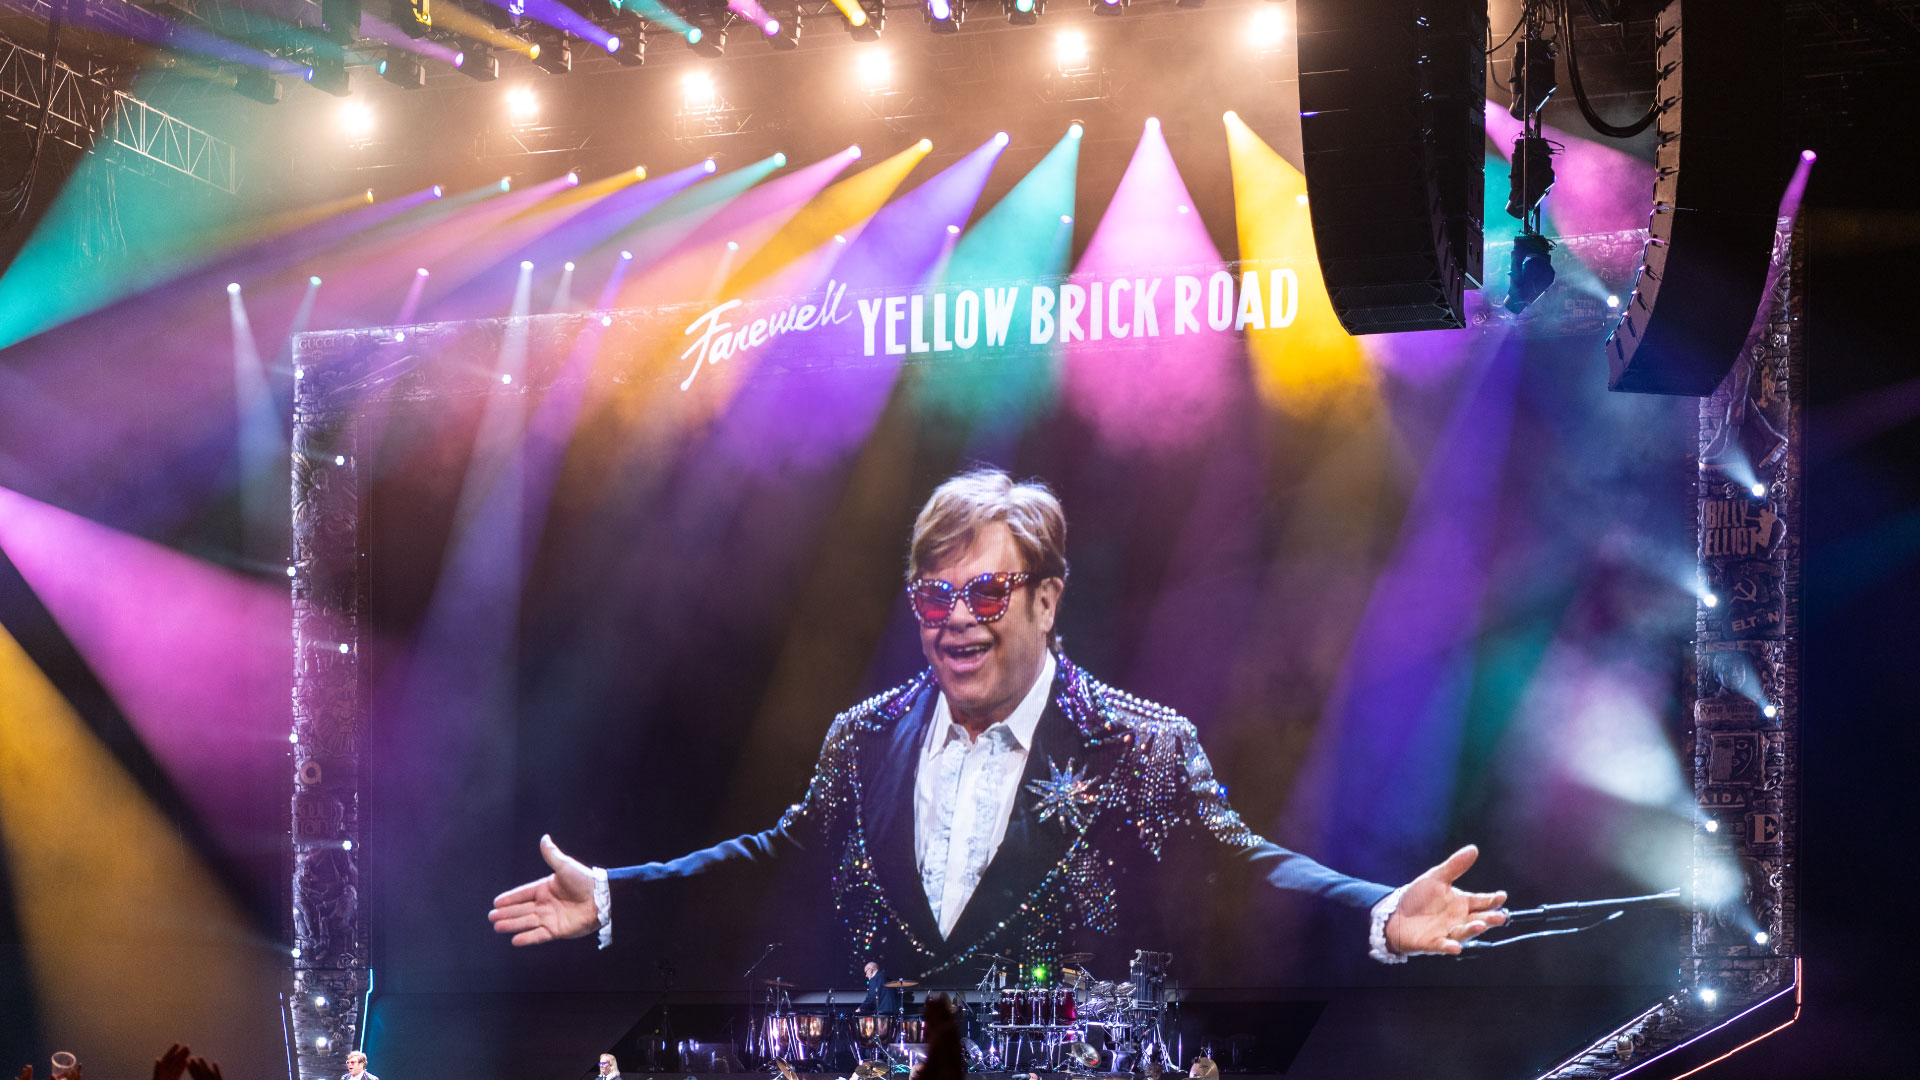 PRG tiene el honor de trabajar con el maravilloso equipo de Elton John, proporcionando iluminación y rigging para esta histórica gira mundial de despedida.